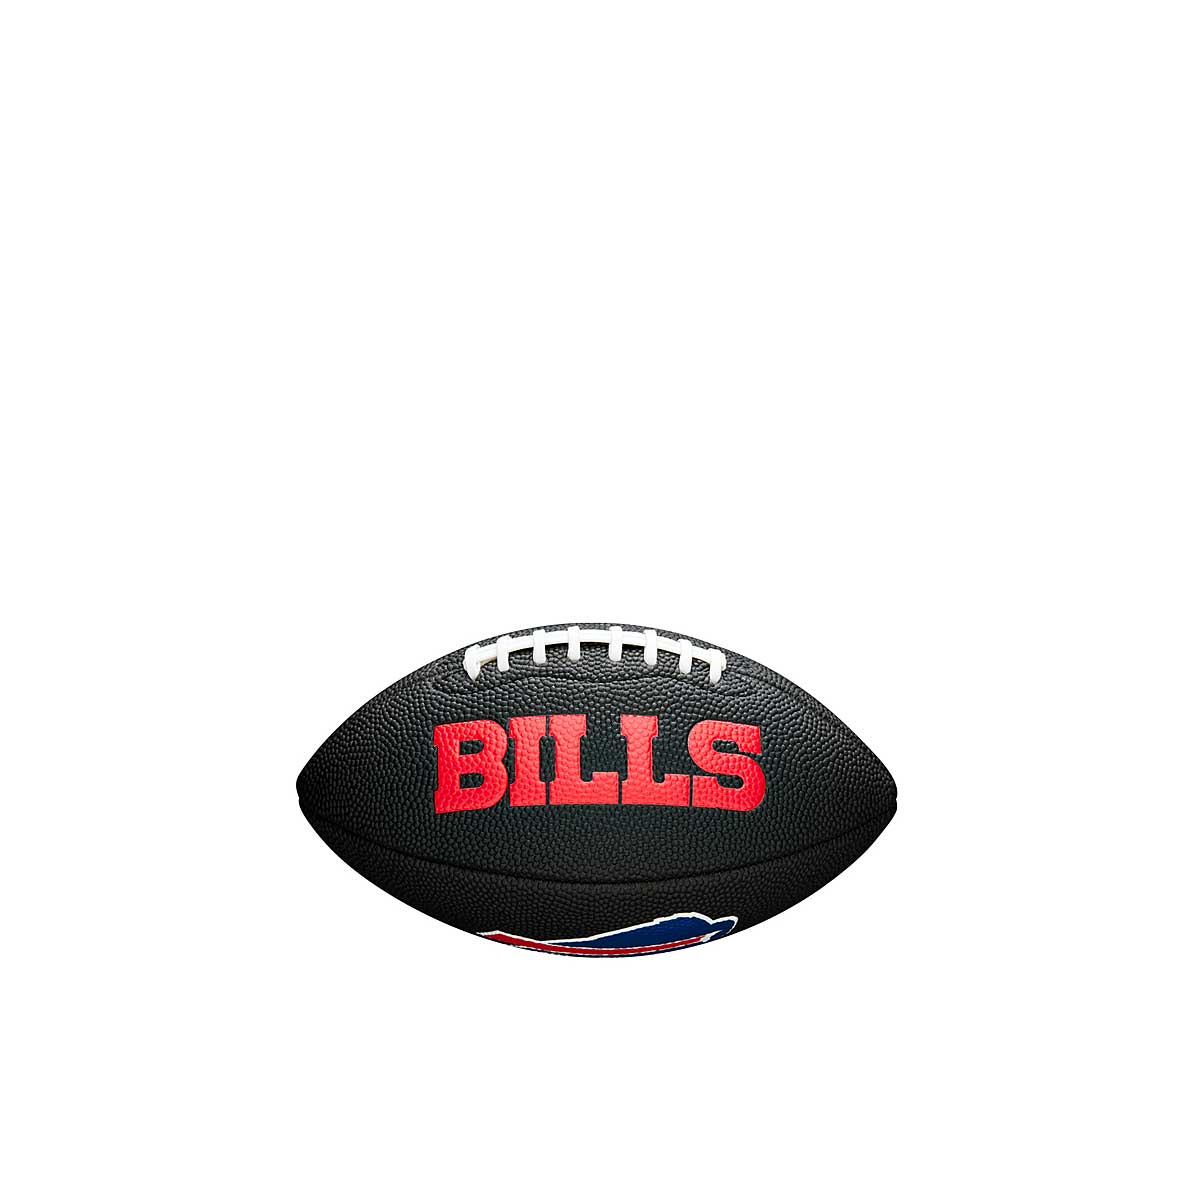 Wilson Nfl Team Soft Touch Football Buffalo Bills, Black/